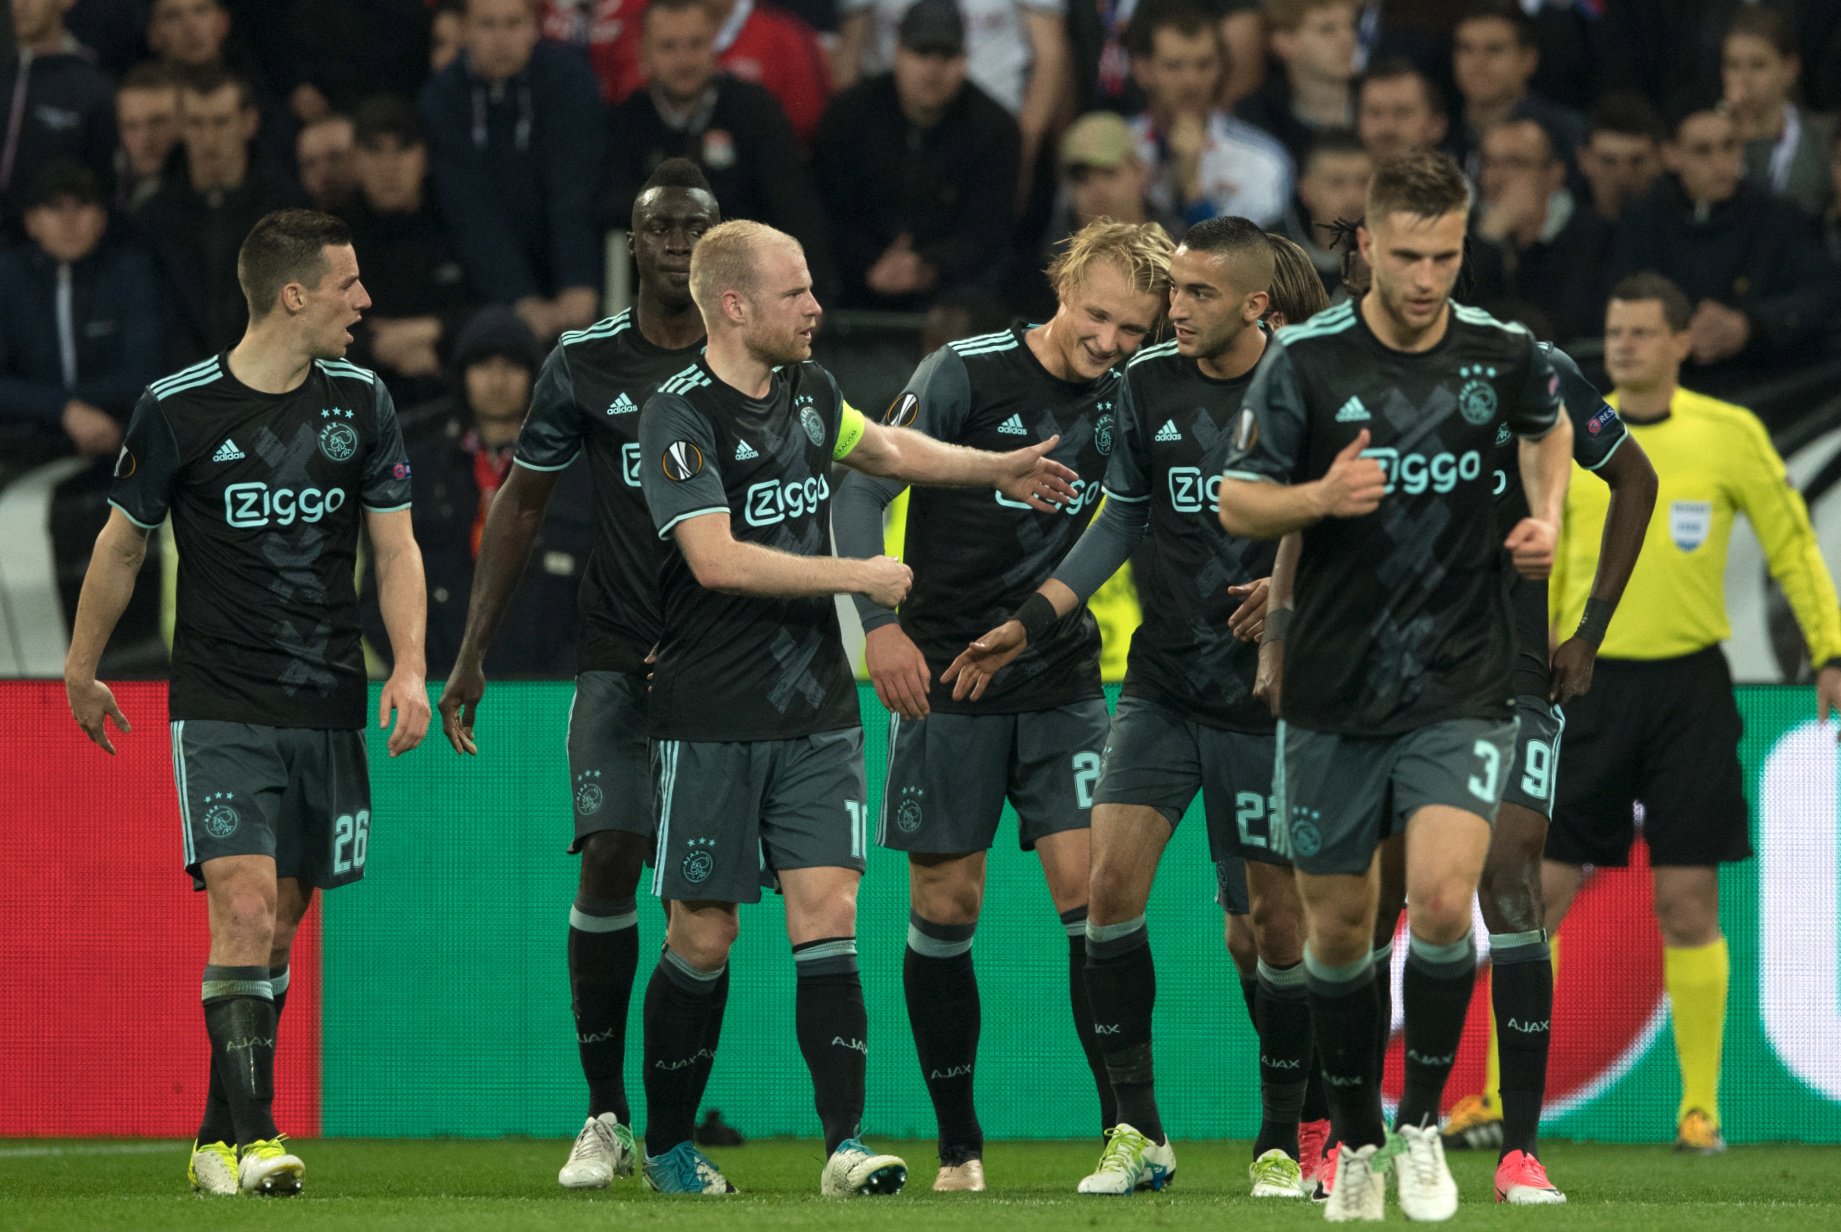 Ajaxhalvefinaleuel